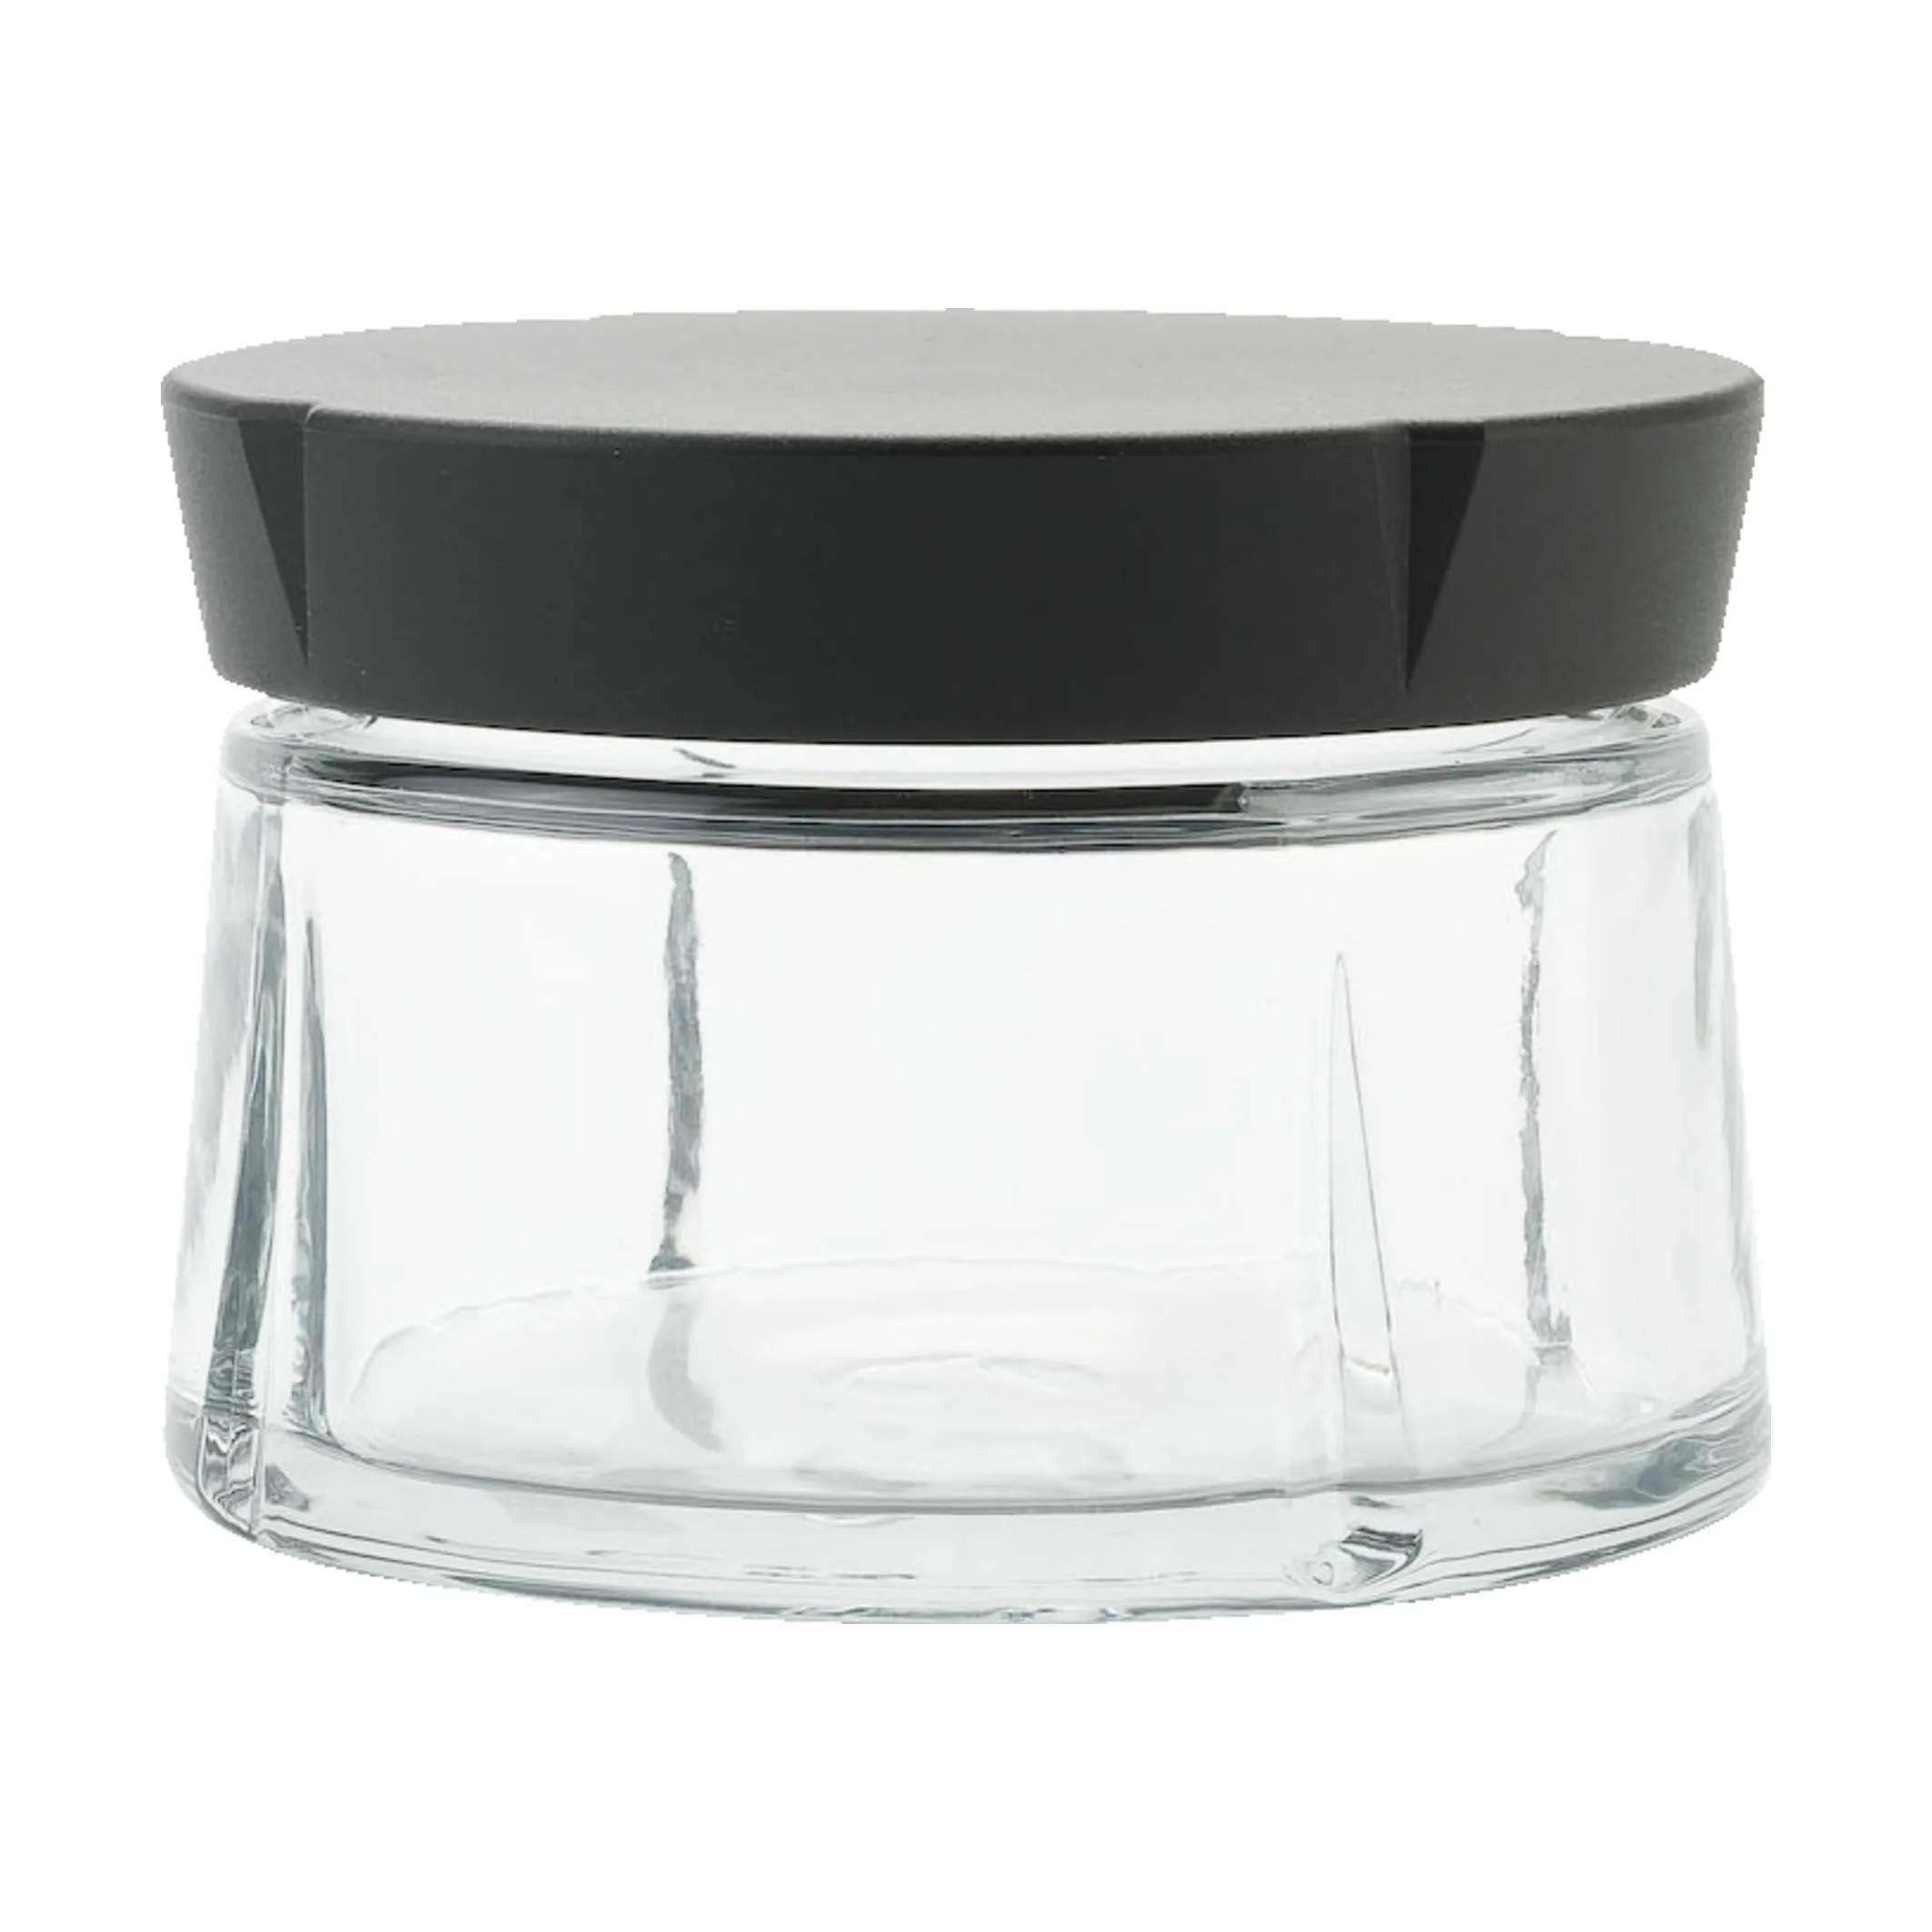 Grand Cru Opbevaringsglas, sort/klar, large